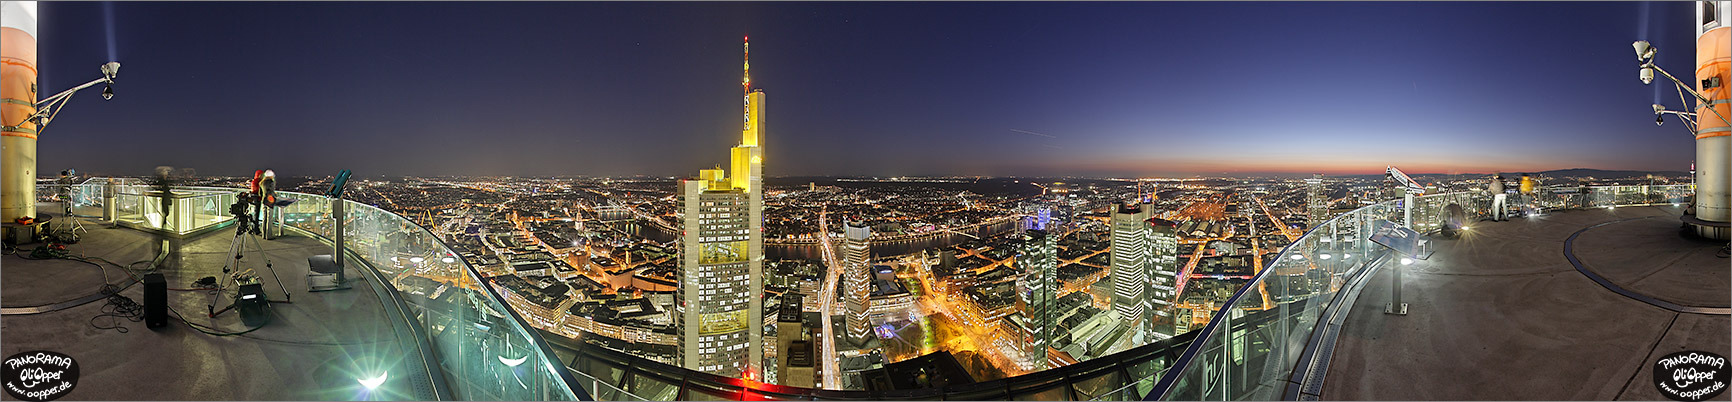 Panorama Bilder Frankfurt am Main - Aussichtsterasse Maintower - S�den - p1011 - (c) by Oliver Opper